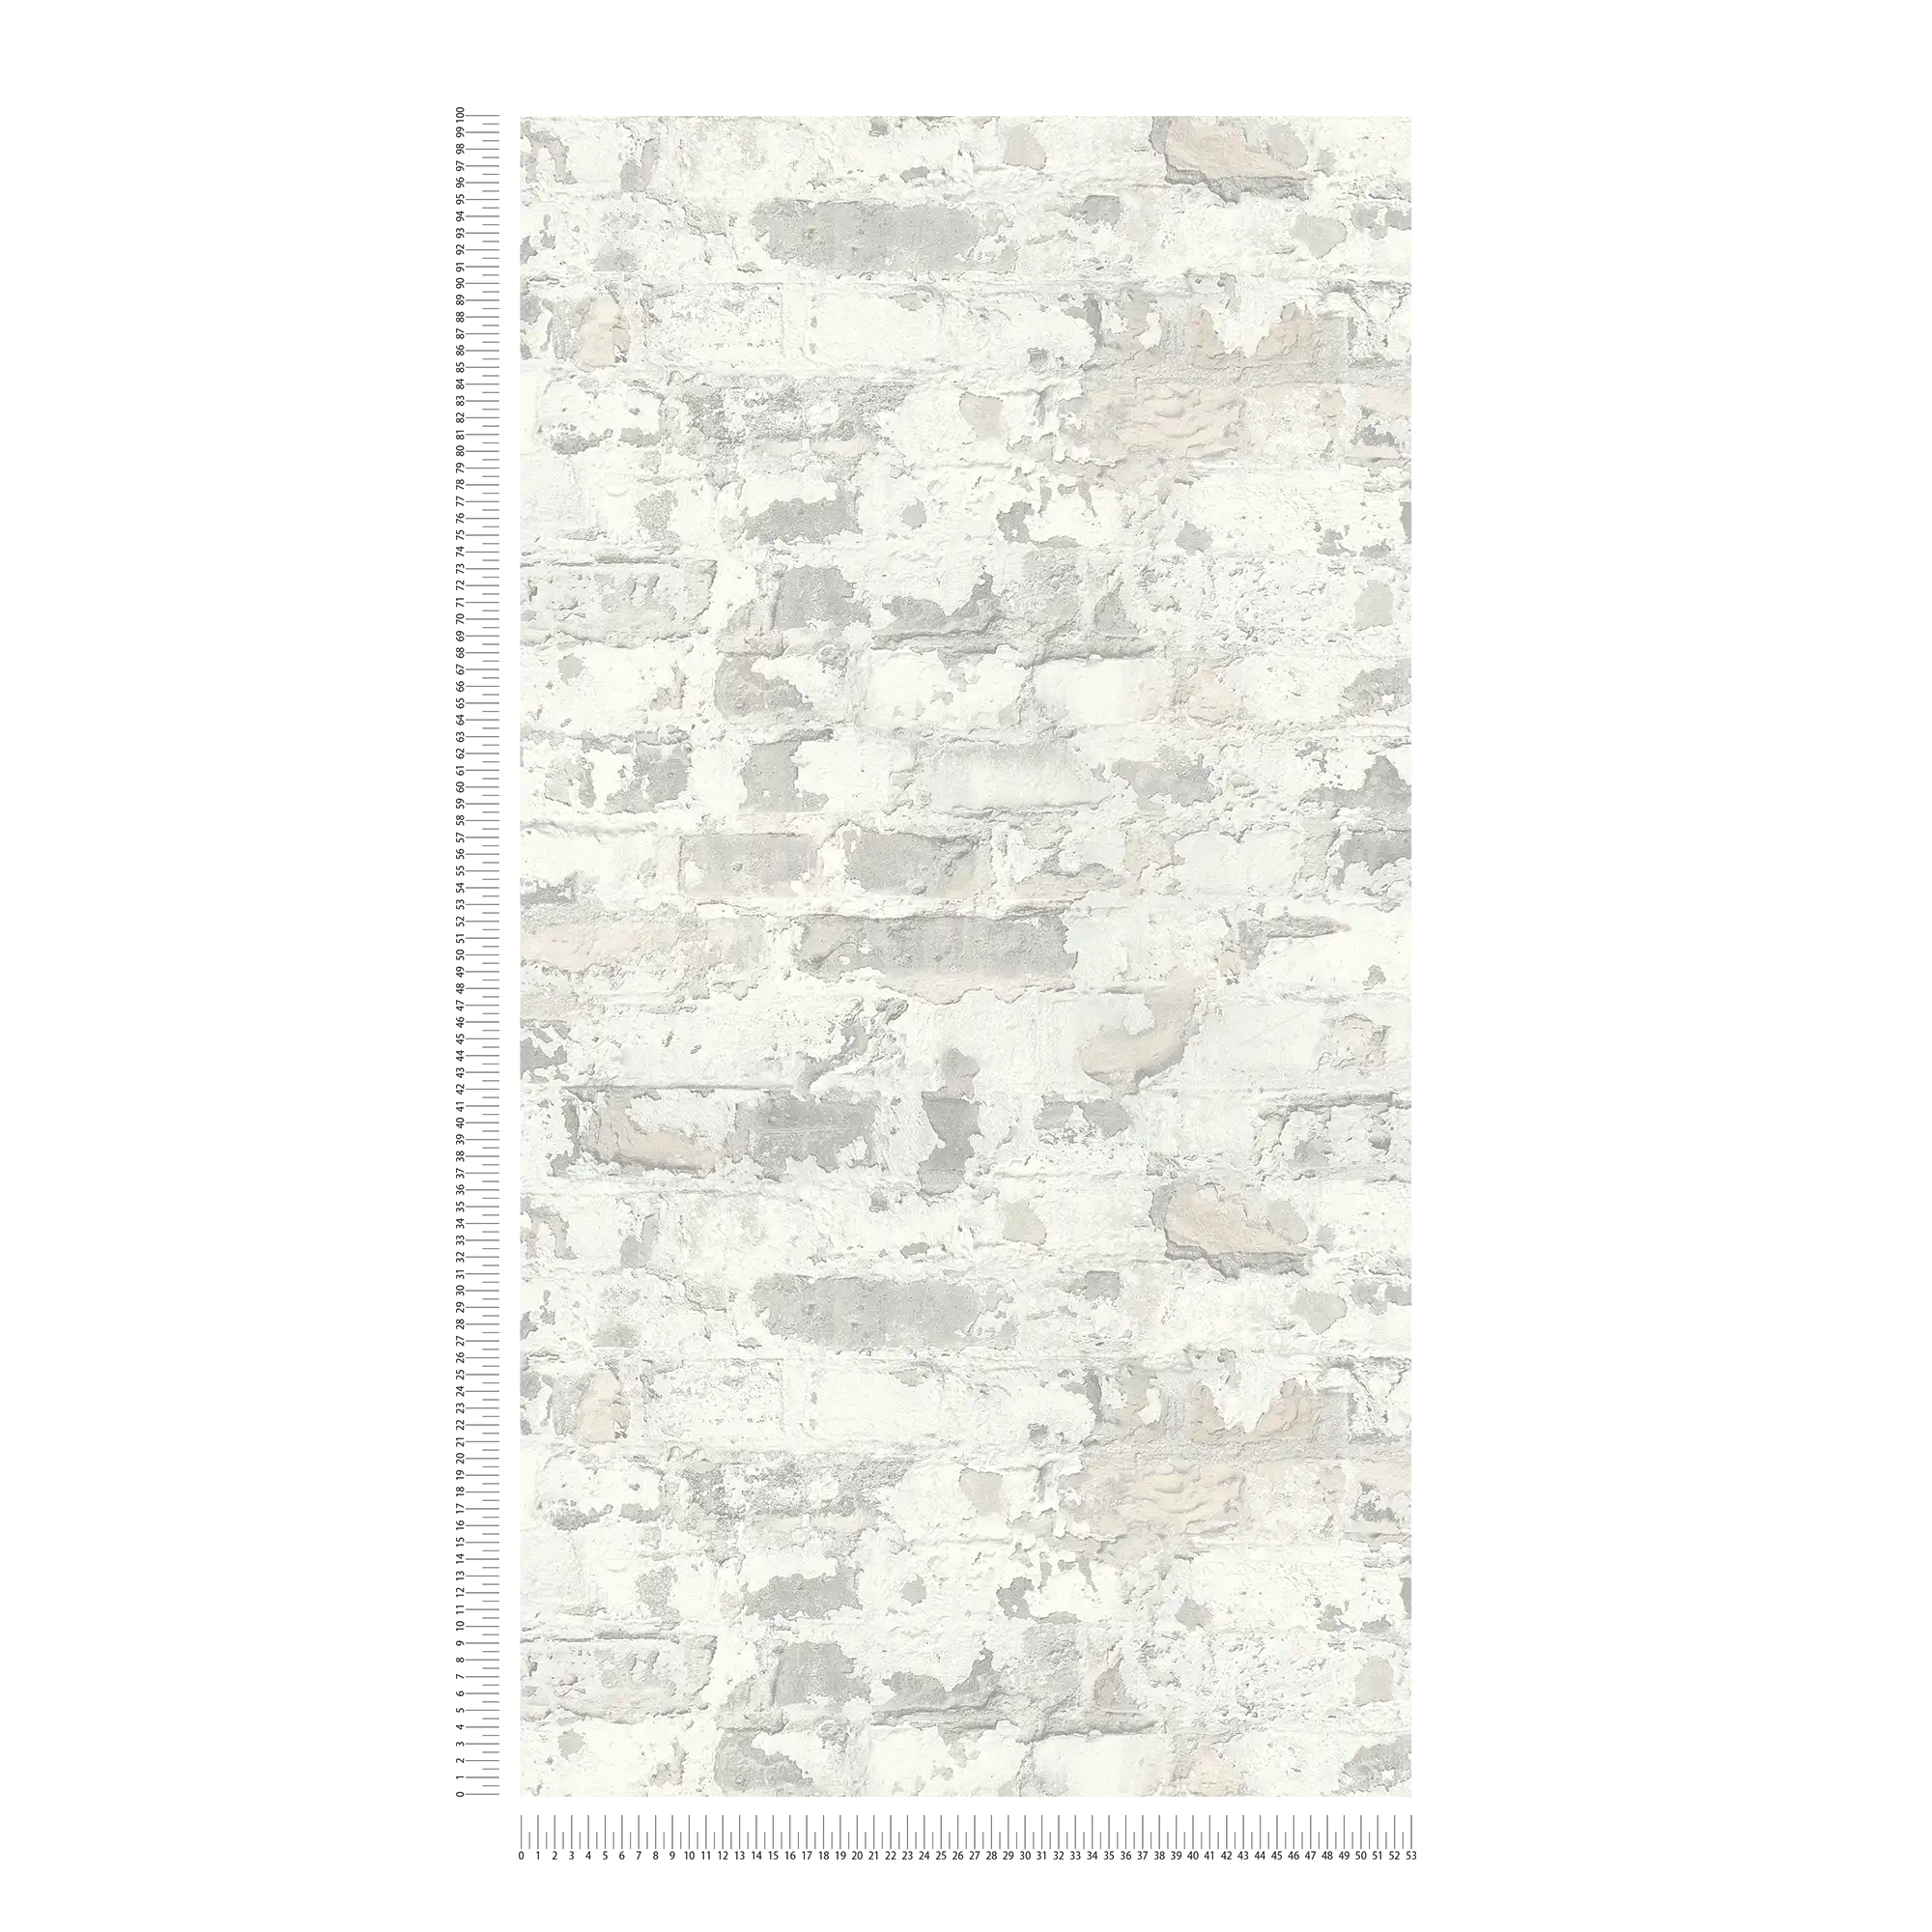             Papel pintado de ladrillo de estilo rústico - gris, blanco
        